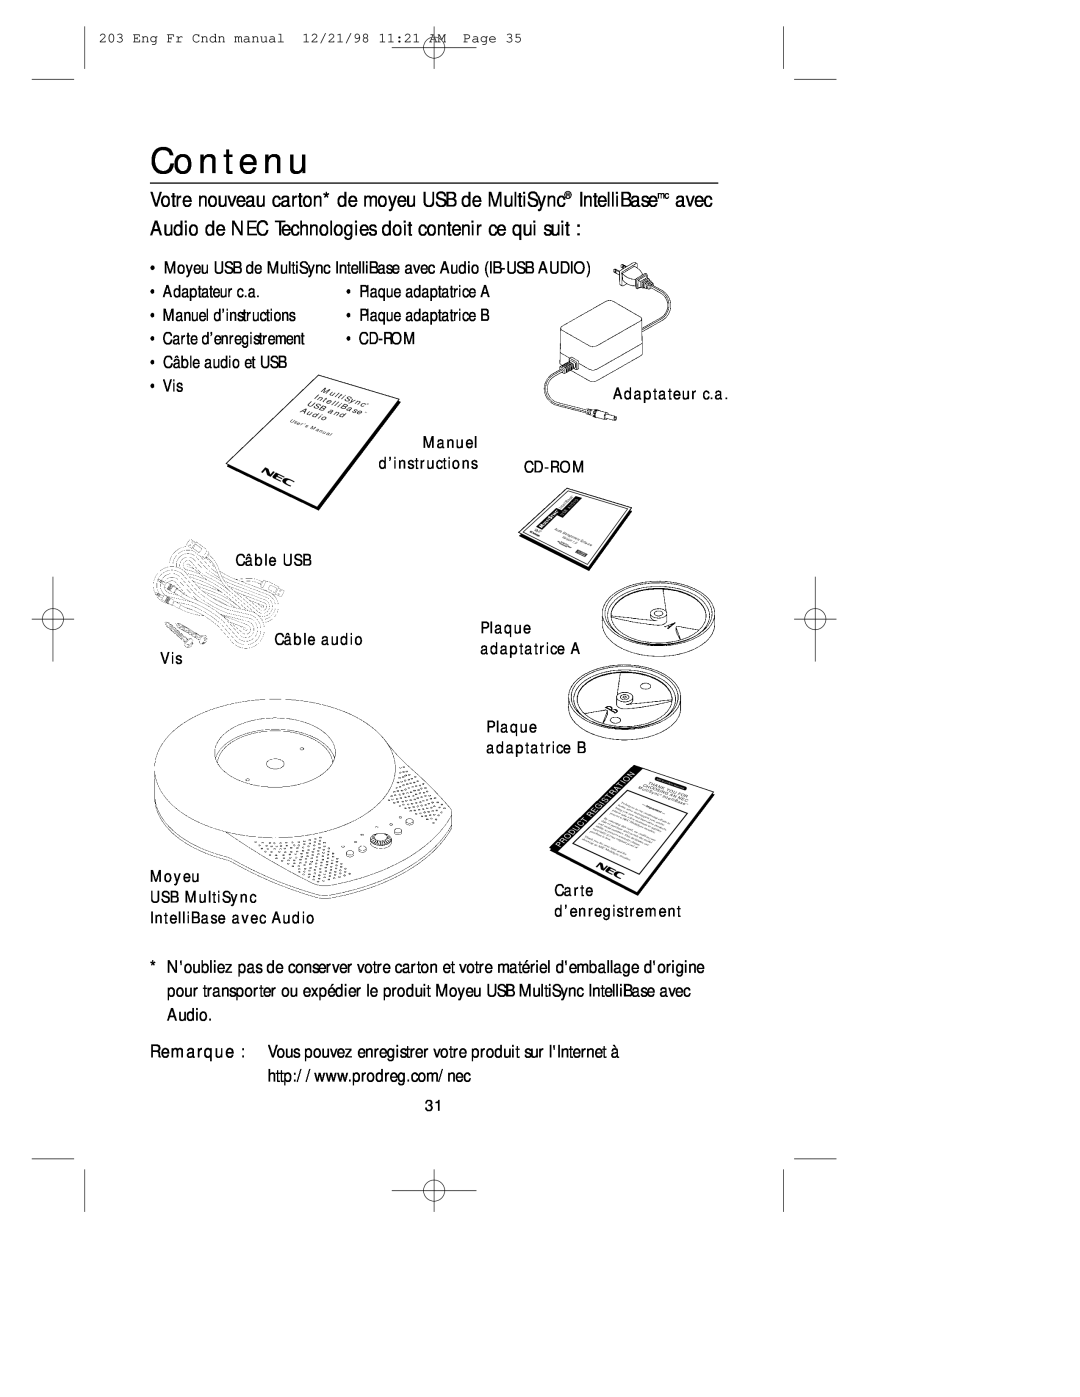 NEC USB user manual Contenu, • Adaptateur c.a, • Plaque adaptatrice A, • Plaque adaptatrice B, • Cd-Rom, • Vis 